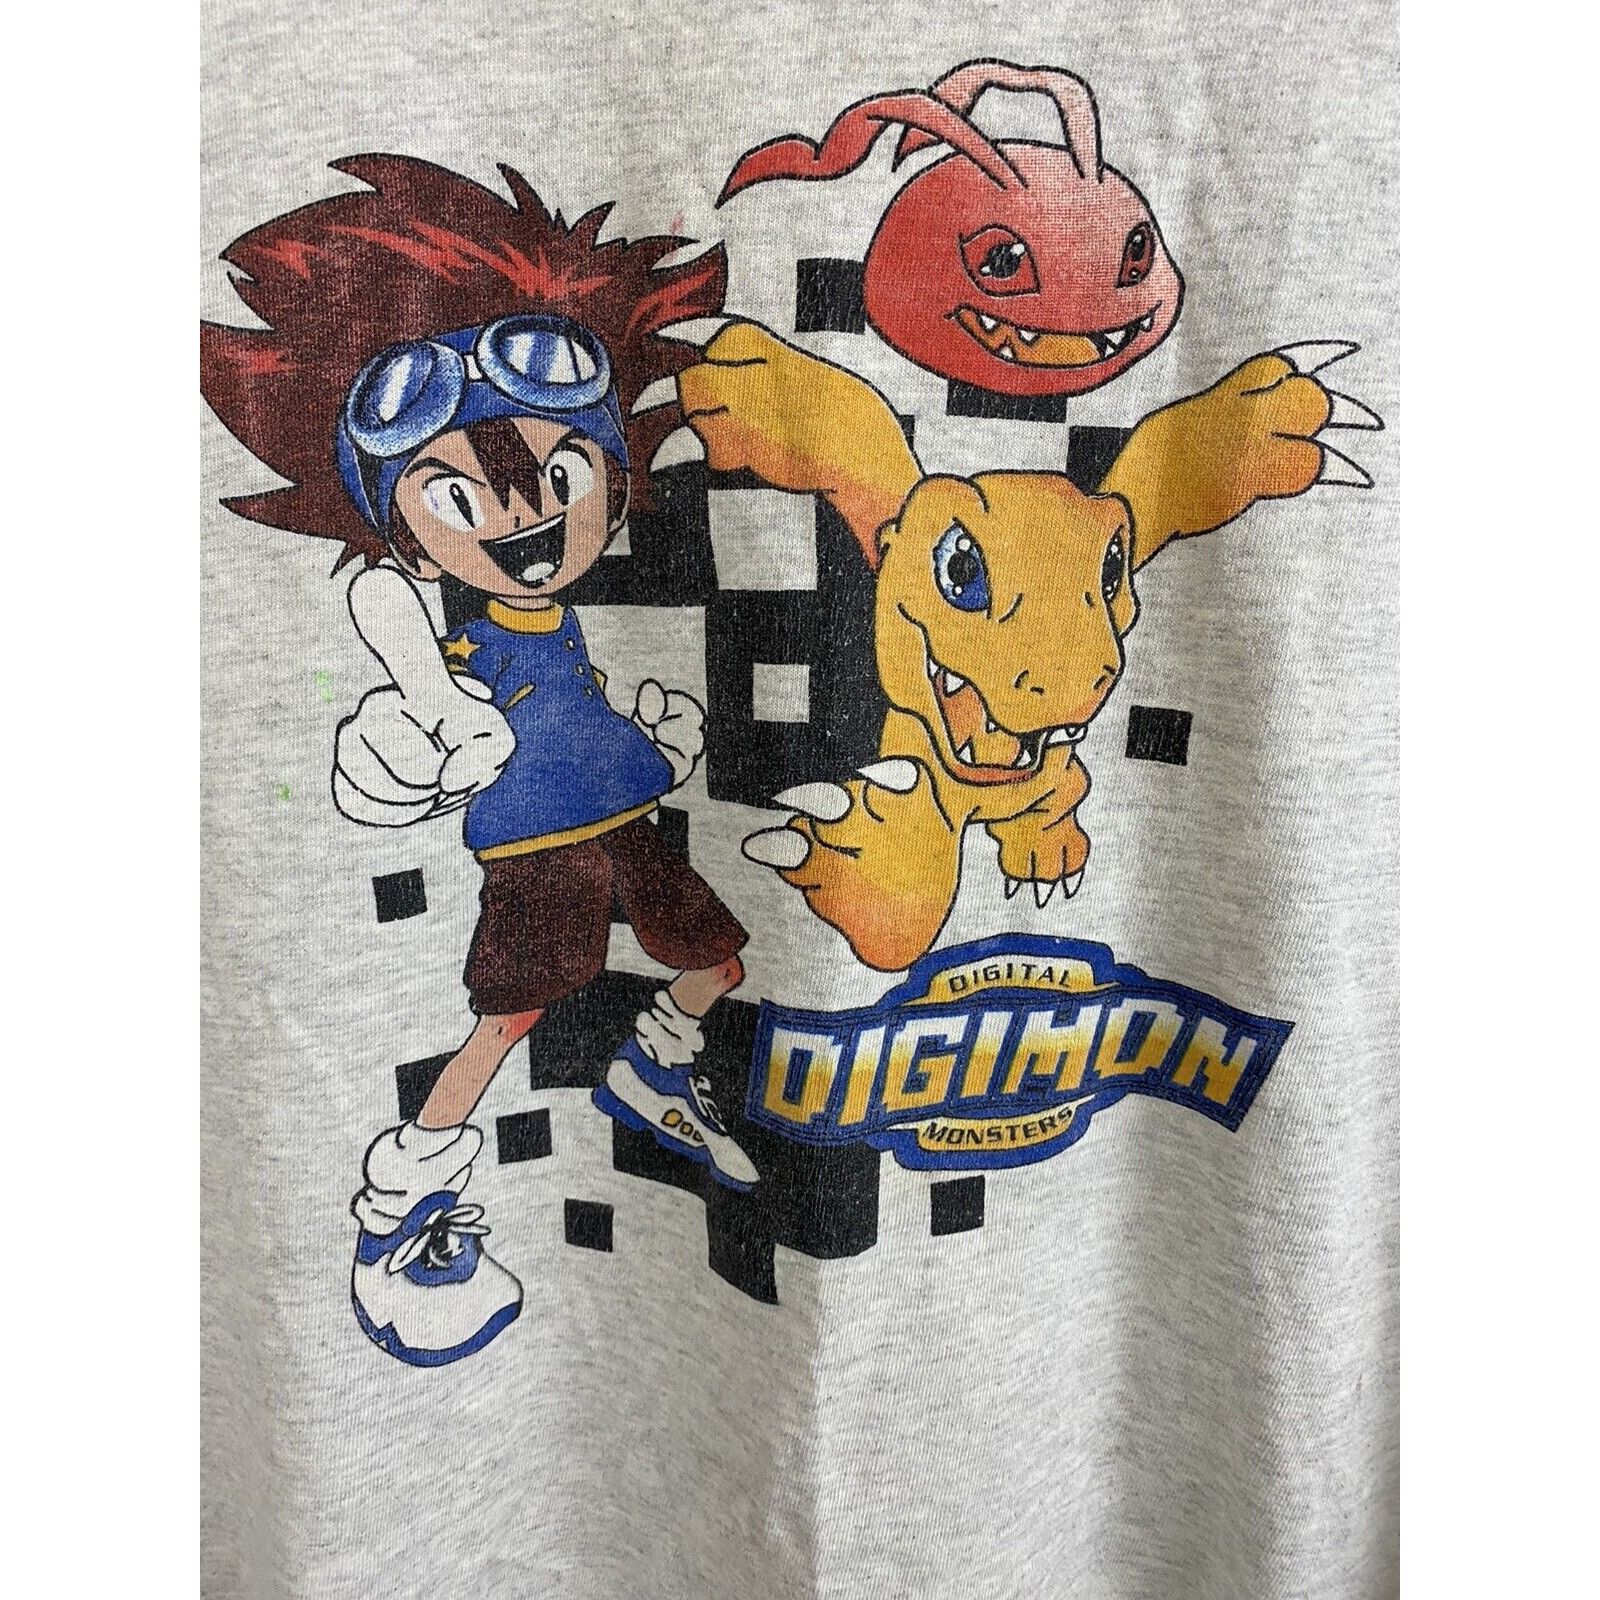 Vintage VTG Digimon Tai Agumon Cartoon Anime Promo T-Shirt ADULT S Size US S / EU 44-46 / 1 - 2 Preview